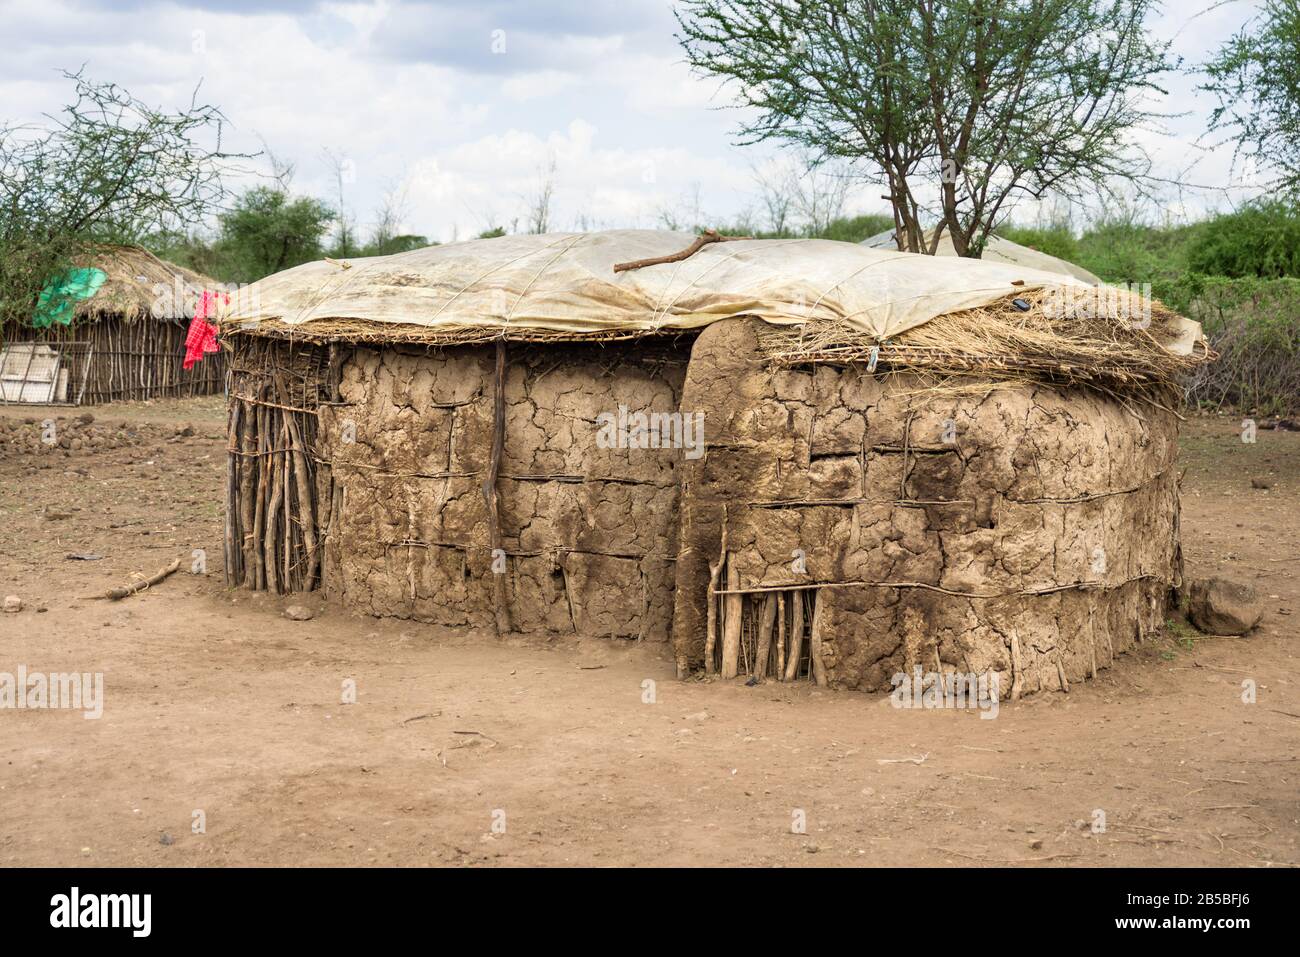 Maison traditionnelle Maasai construite à partir de branches, boue et vache dung, Kenya Banque D'Images